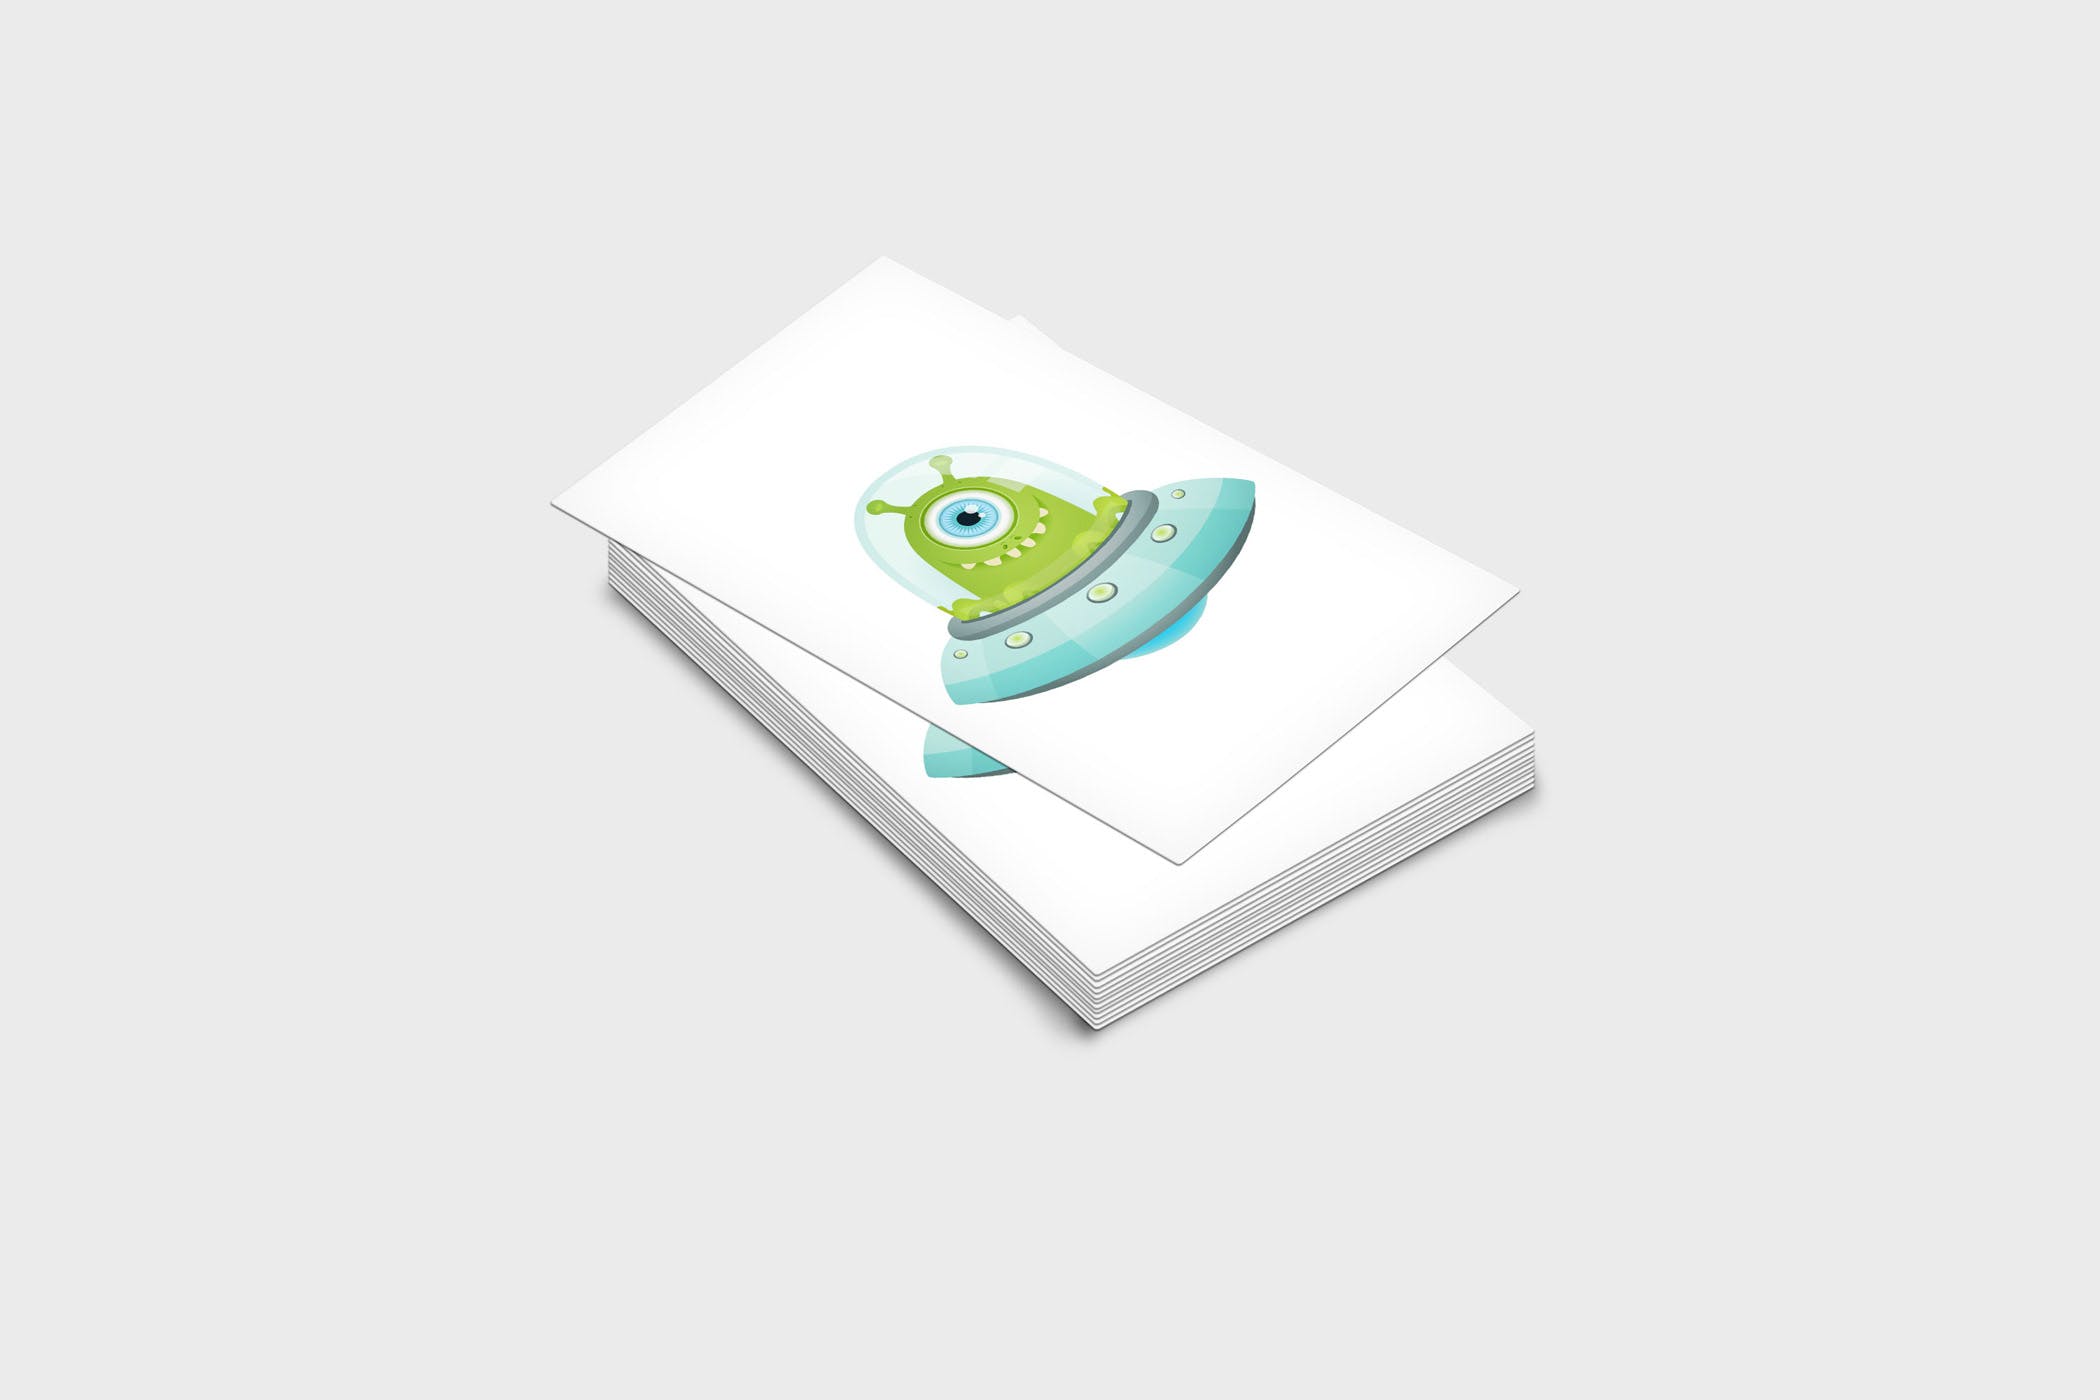 企业名片设计效果图展示样机素材库精选模板 4 Business Card Mock-Up Template插图(1)